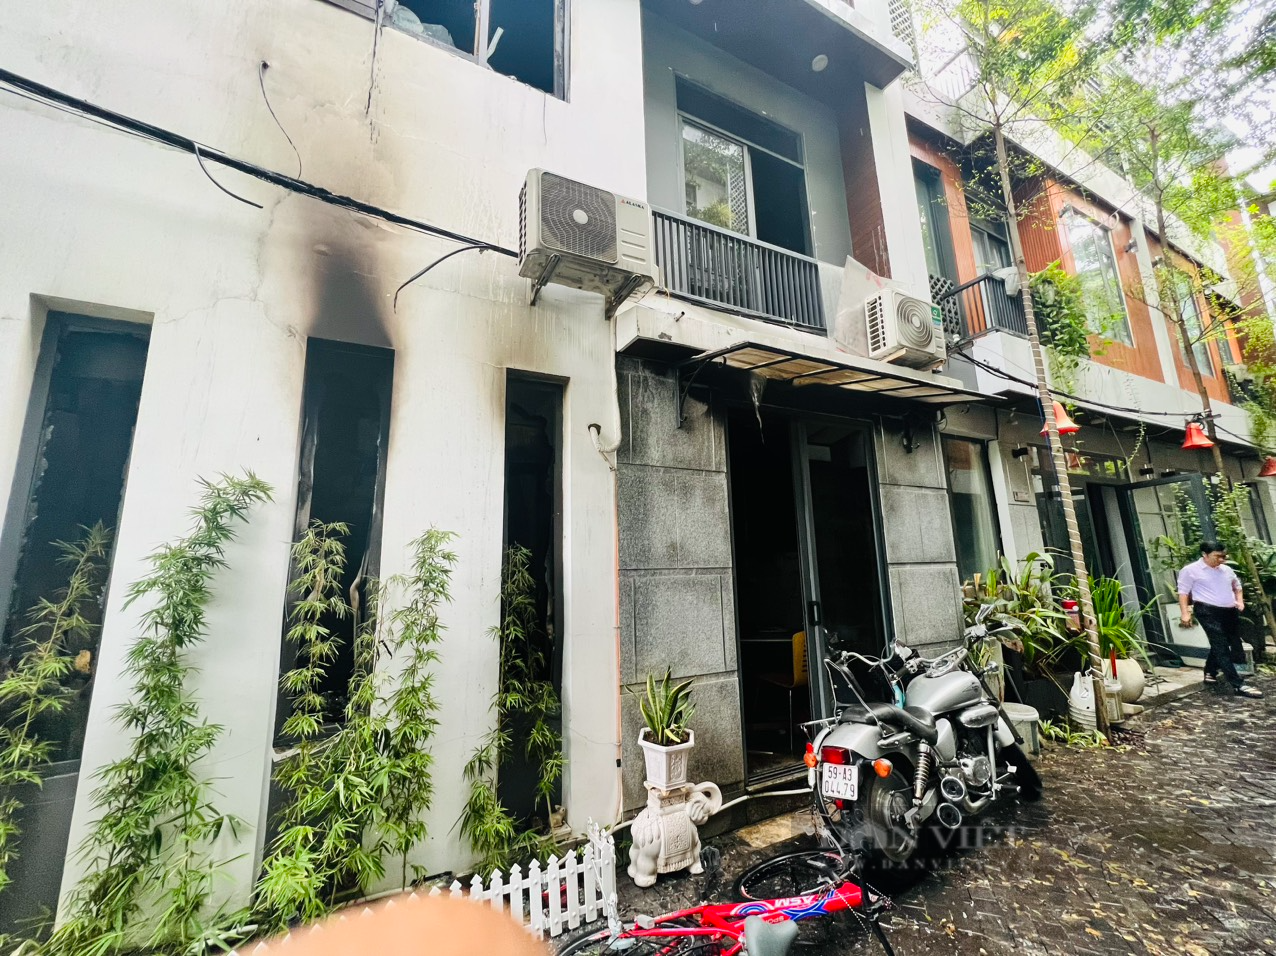 Bên trong căn nhà bị lửa thiêu rụi trong đêm khiến 2 cháu bé tử vong tại Đà Nẵng - Ảnh 2.